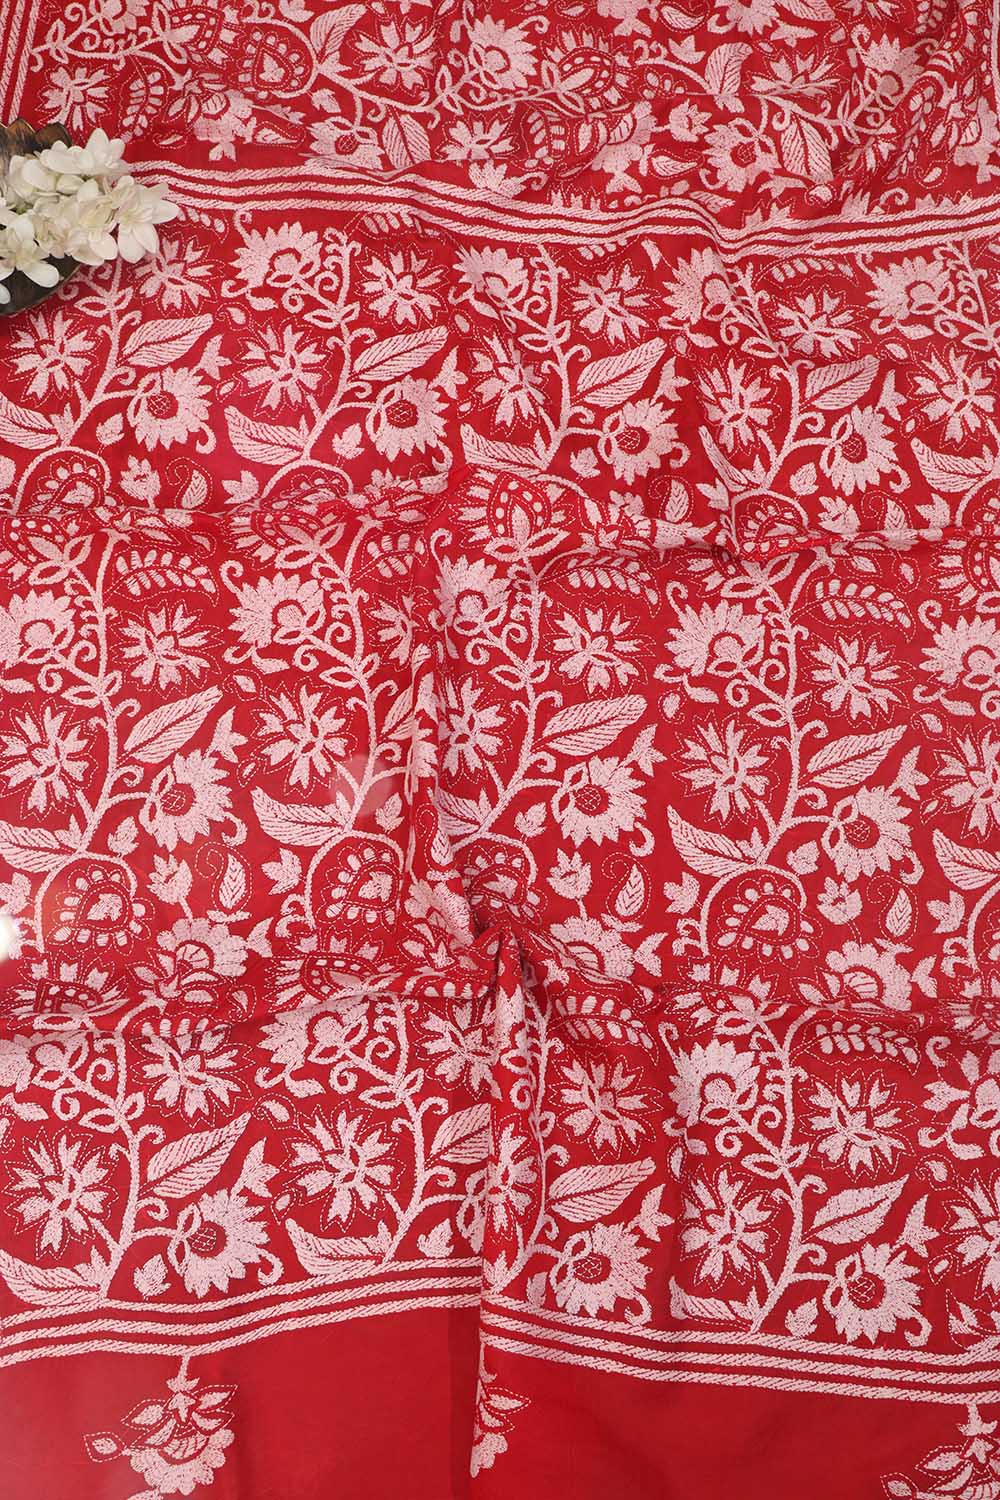 Exquisite Red Hand Embroidered Kantha Work Bangalore Silk Saree - Luxurion World